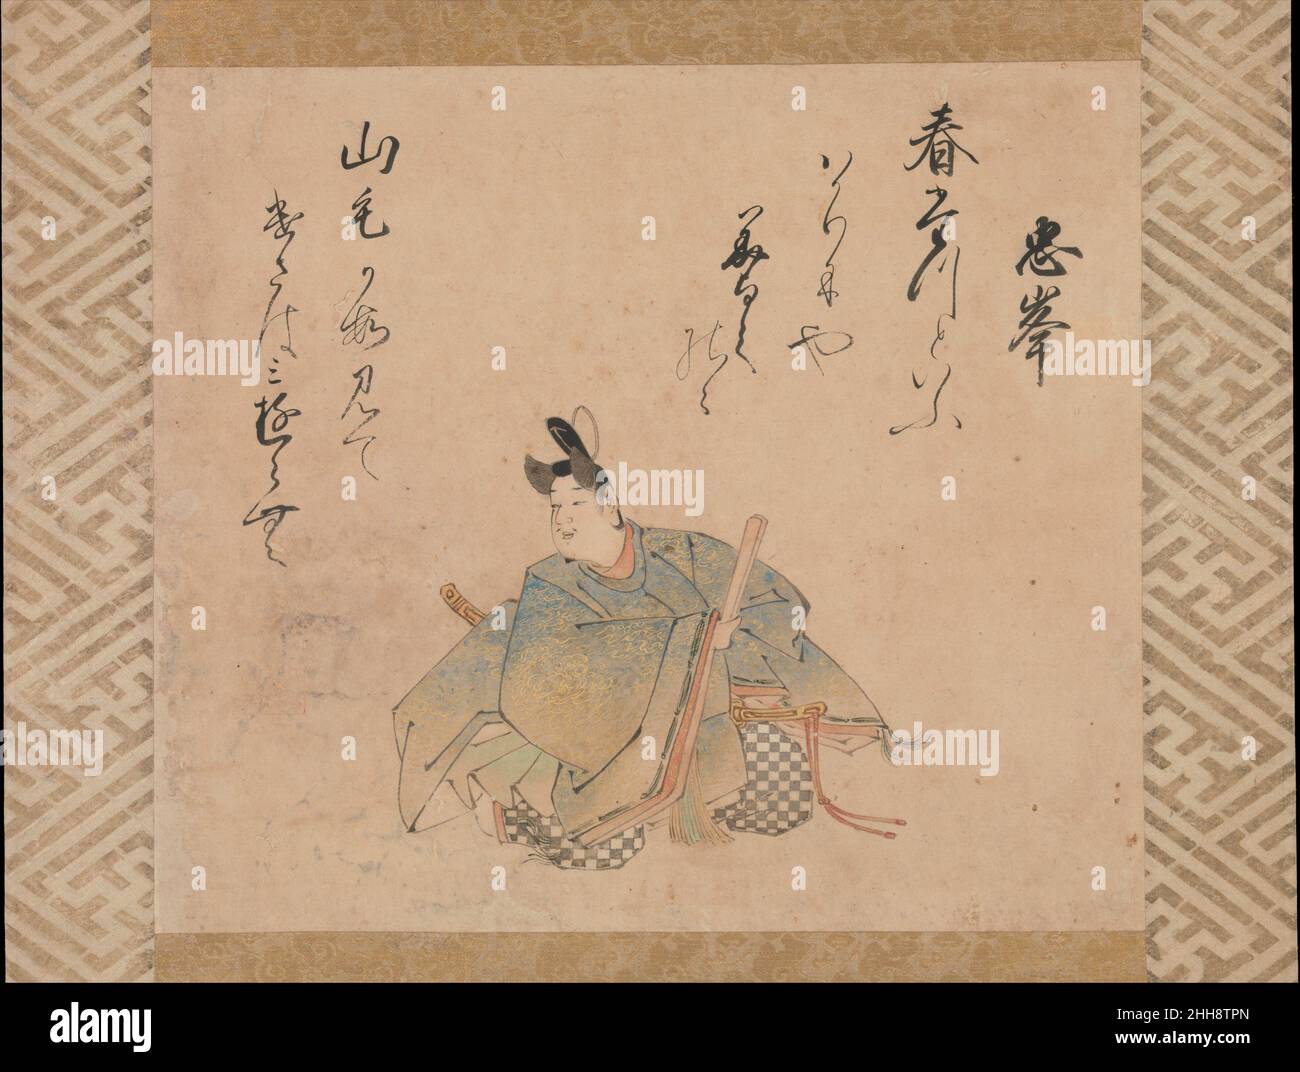 Le poète Mibu no Tadamine, d'un ensemble de feuilles d'album illustrant les trente-six Immortels poétiques début 17th siècle Iwasa Matabei Japonais pour l'élite japonaise, la poésie était la quintessence littéraire expérience.Idéalisés et profondément admirés, les poètes ont souvent été commémorés en portraits.Au début du XIe siècle, Fujiwara Kintō (966–1041) a sélectionné trente-six poètes 'immortels' du passé, et leurs images sont devenues un thème populaire dans la tradition de peinture yamato-e.Cette photo, qui faisait partie à l'origine d'un ensemble de feuilles d'album des trente-six poètes, est attribuée à Iwasa Matabei (1578-1650), Banque D'Images